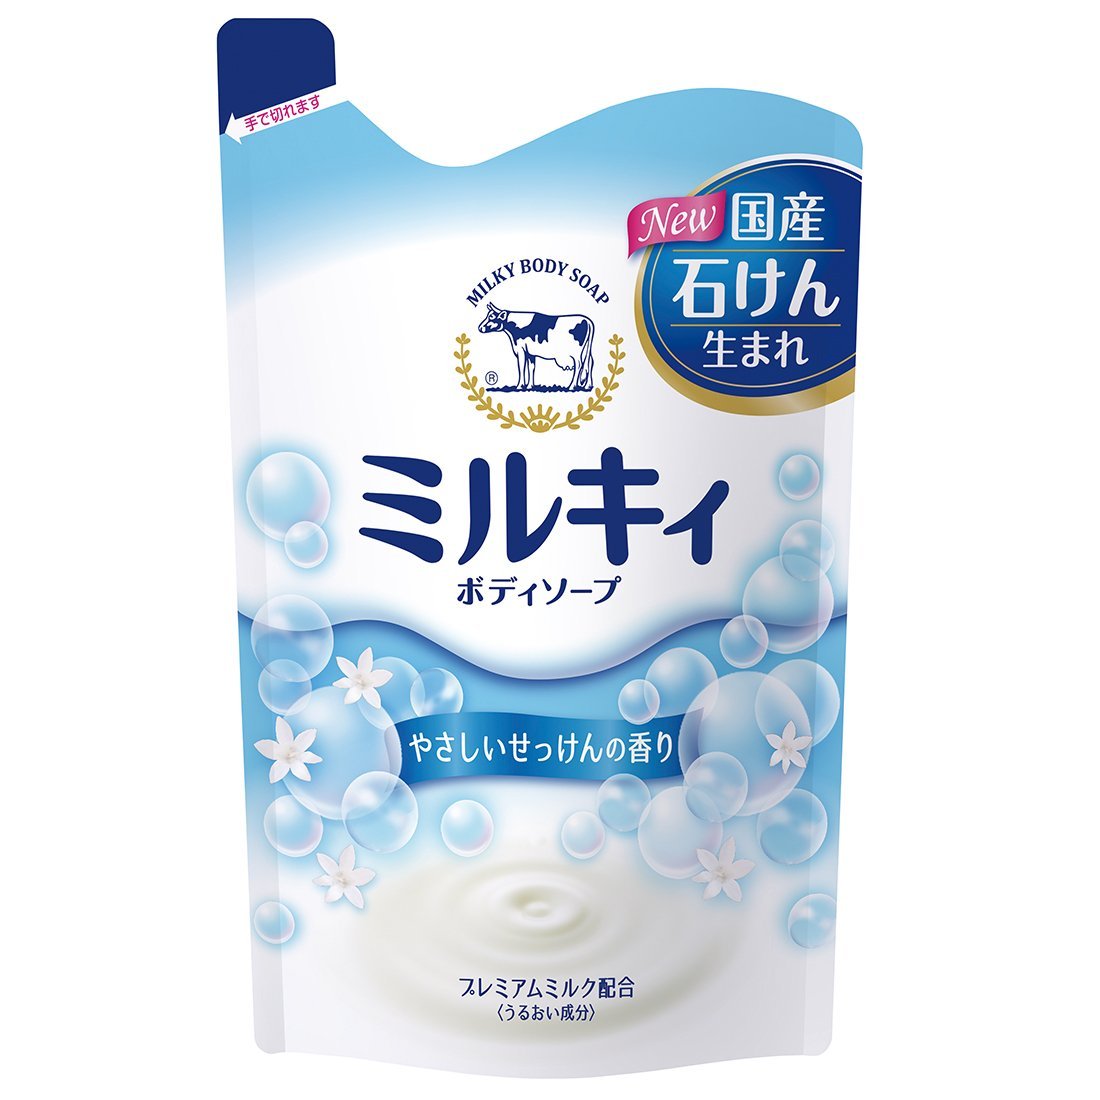 картинка Gyunyu Sekken Молочное жидкое мыло для тела "Milky Body Soap" сладкий аромат мыла, 400 мл  от магазина El Corazon